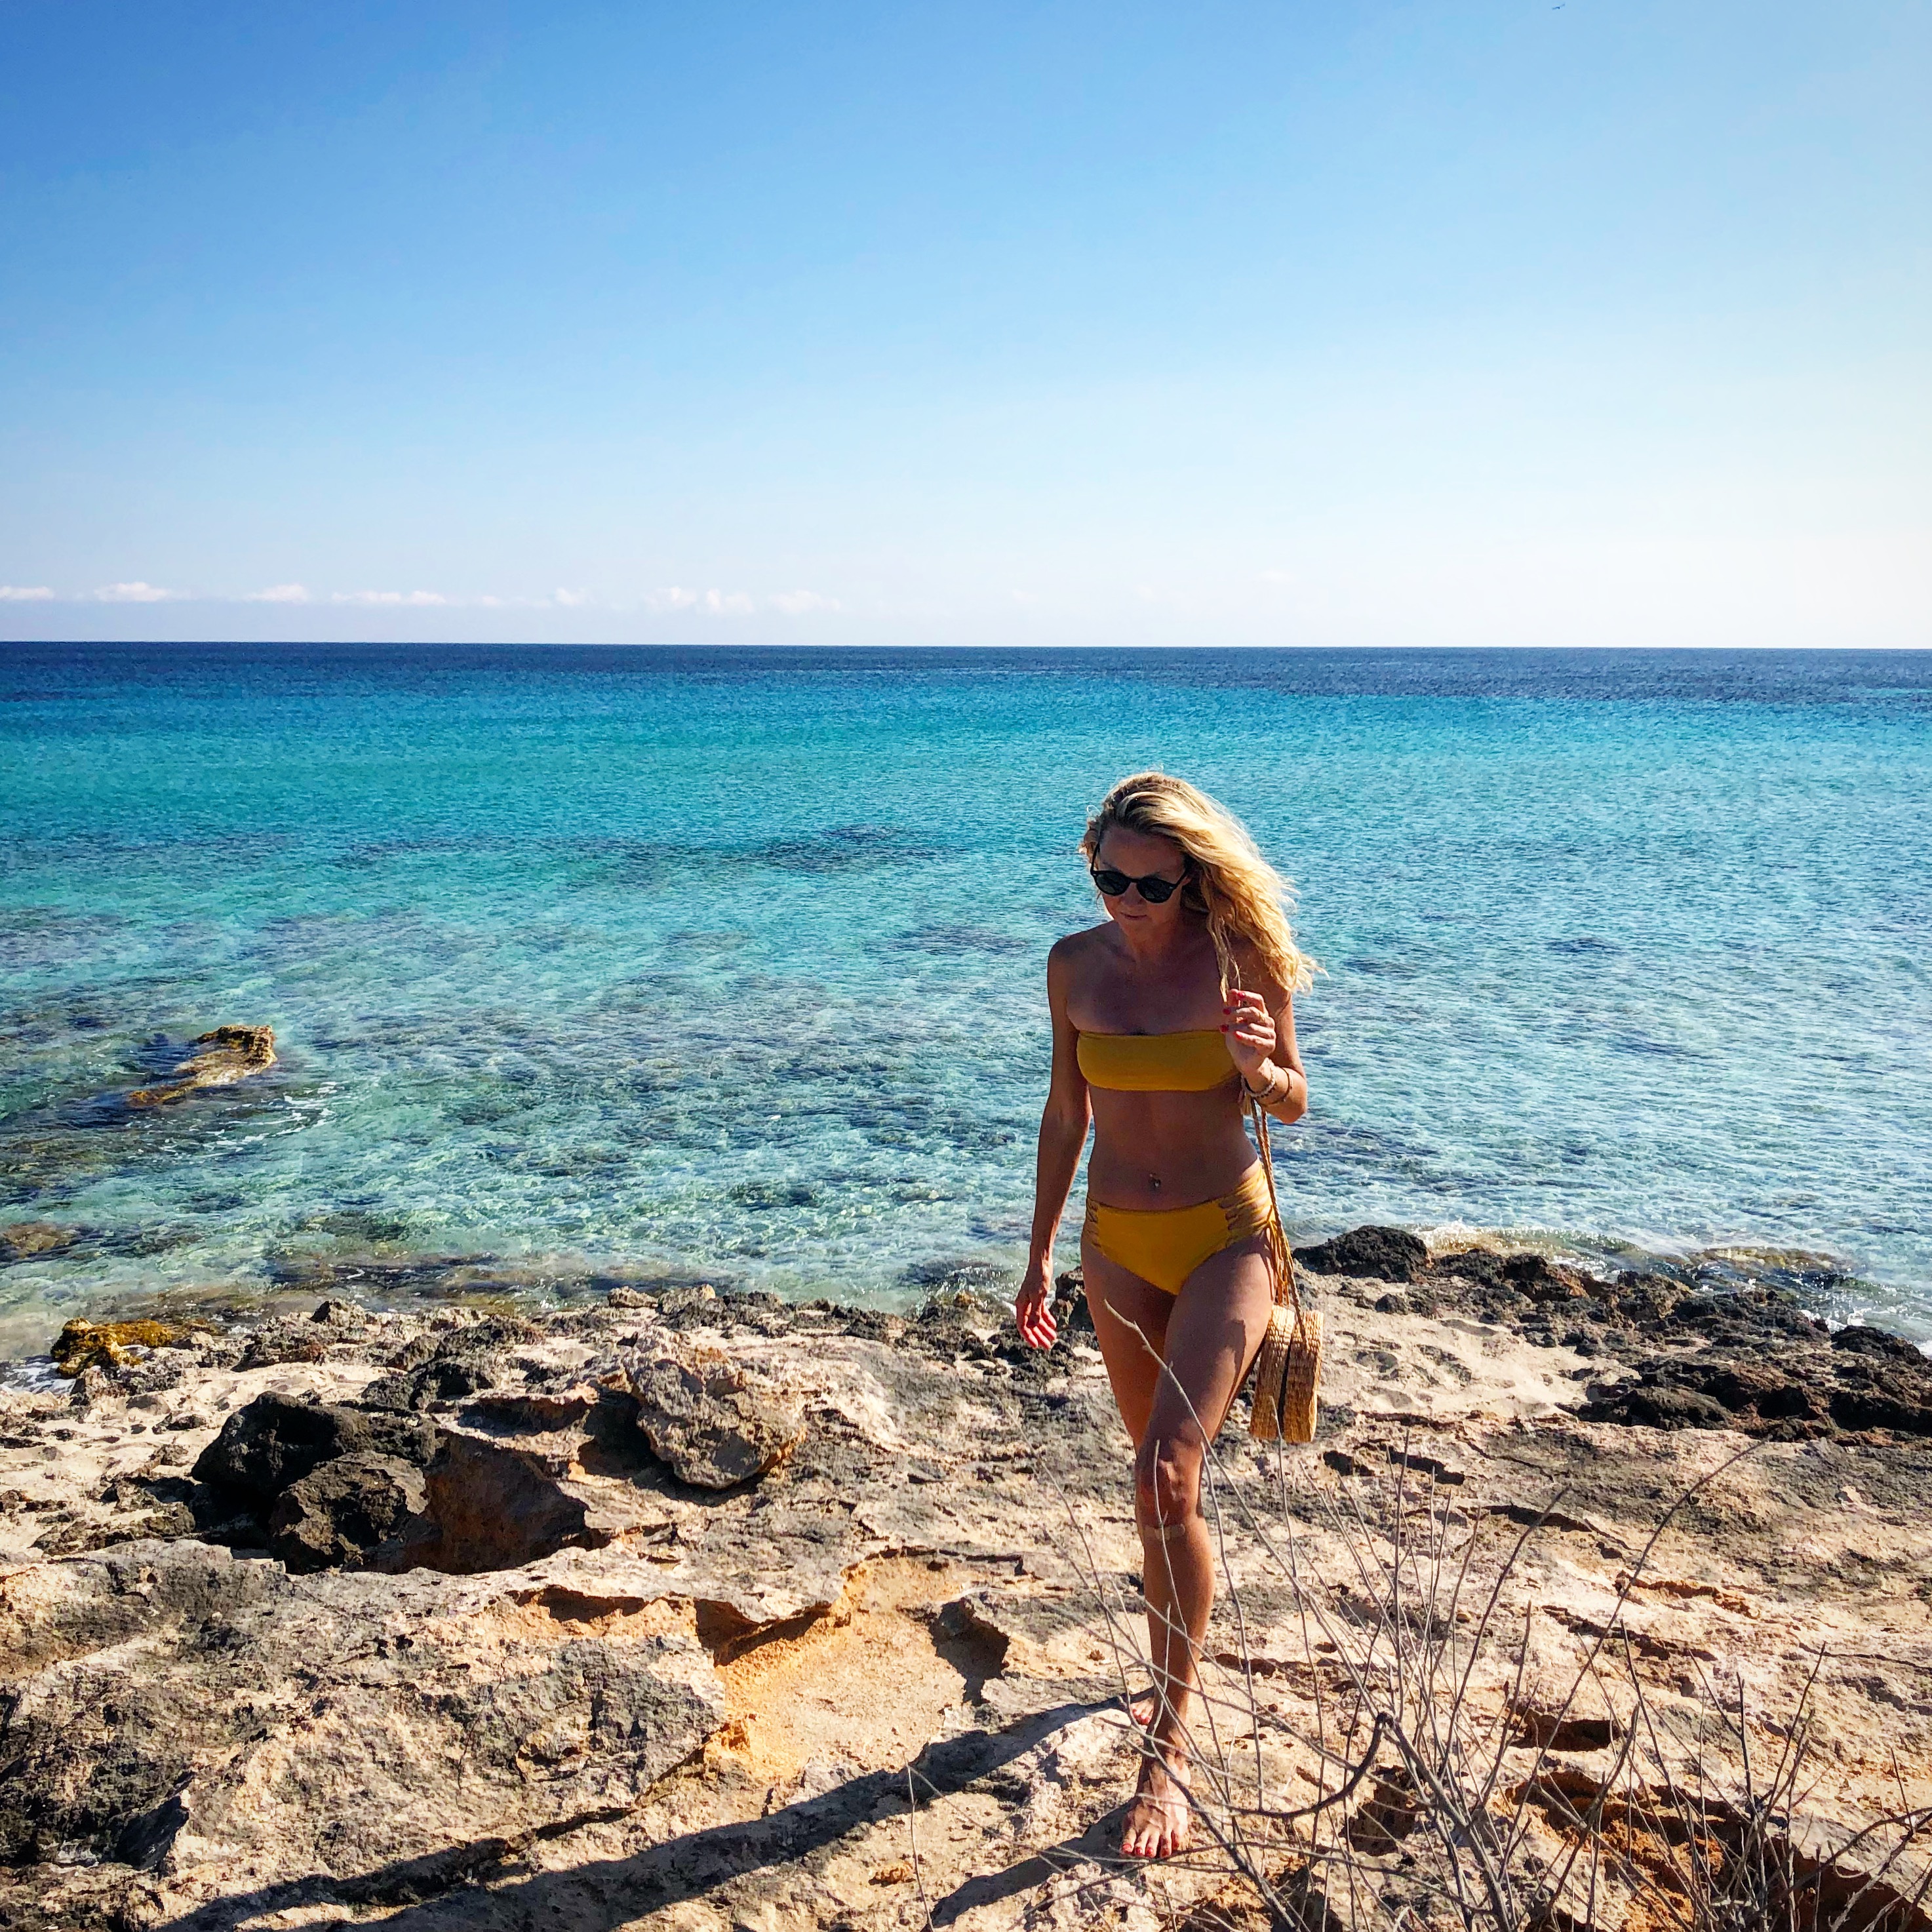 Europe Naturist Beach Videos - Formentera, The European Bohemian Beach Dream ~ Lylita's Way